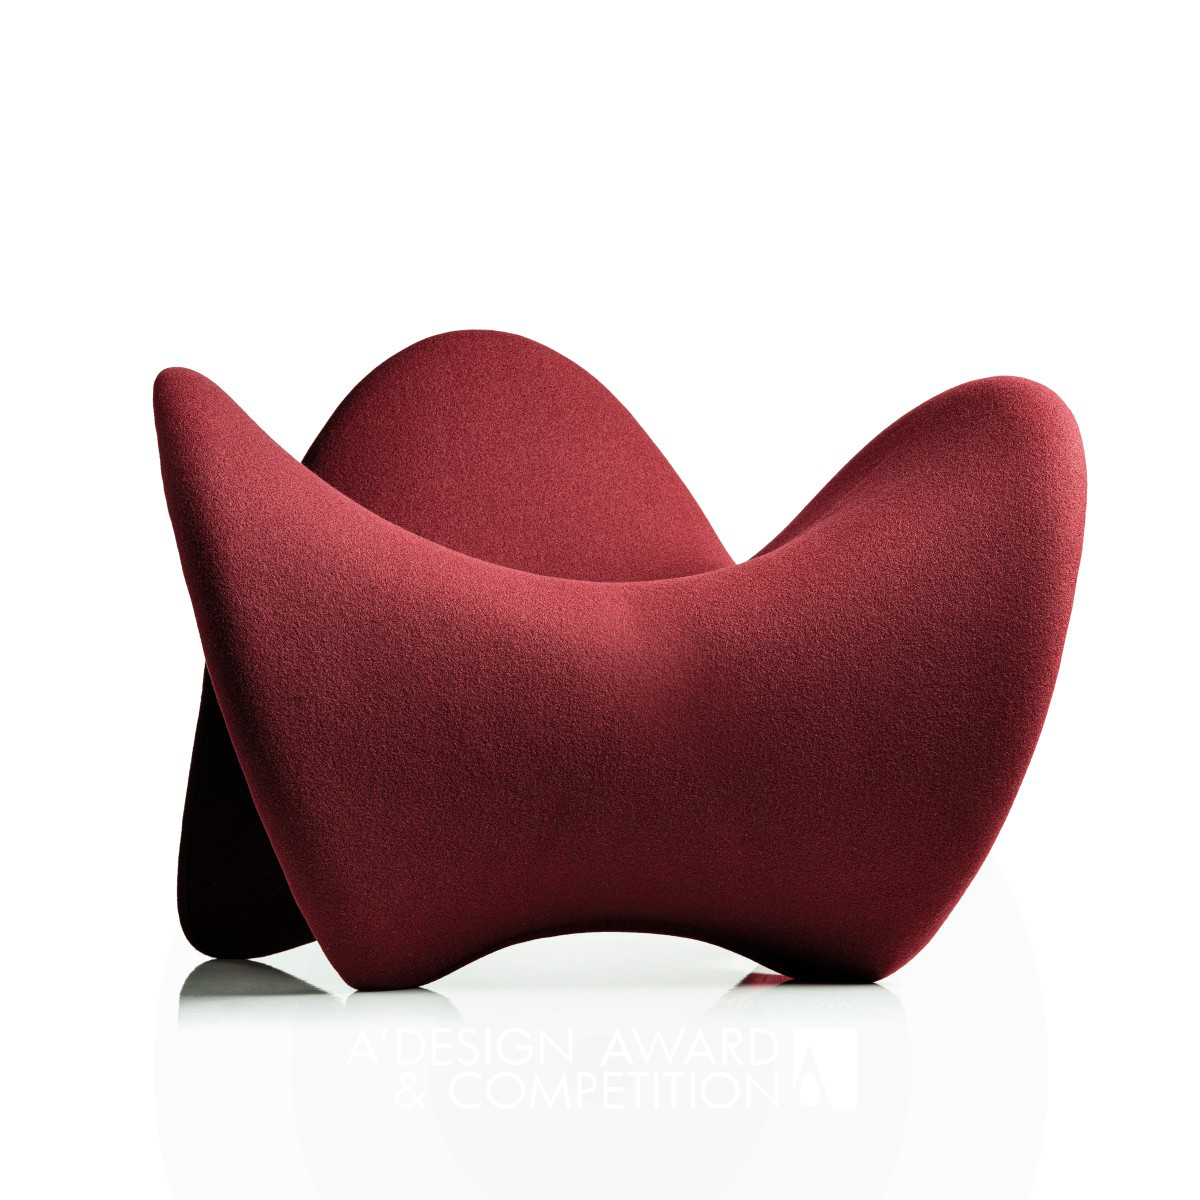 Grace Lounge Chair by Daniel Devadder